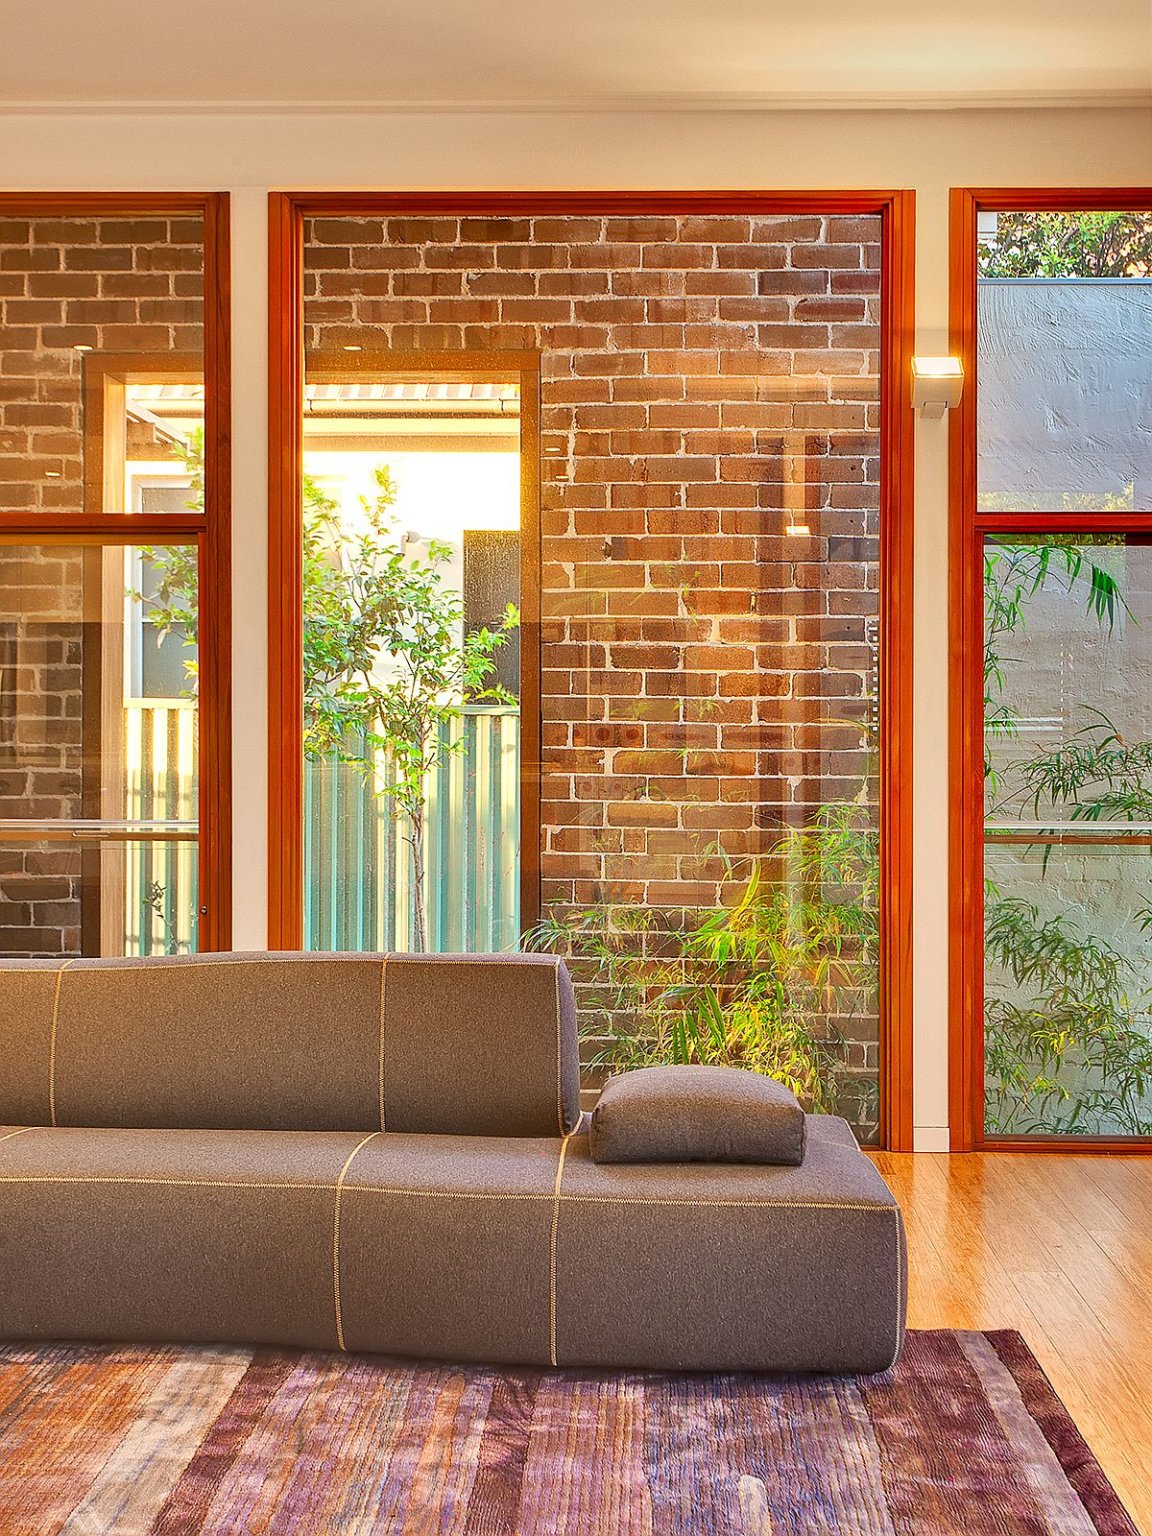 hình ảnh một góc phòng sinh hoạt chung với sofa ghi xám, tường gạch, cửa kính trong suốt